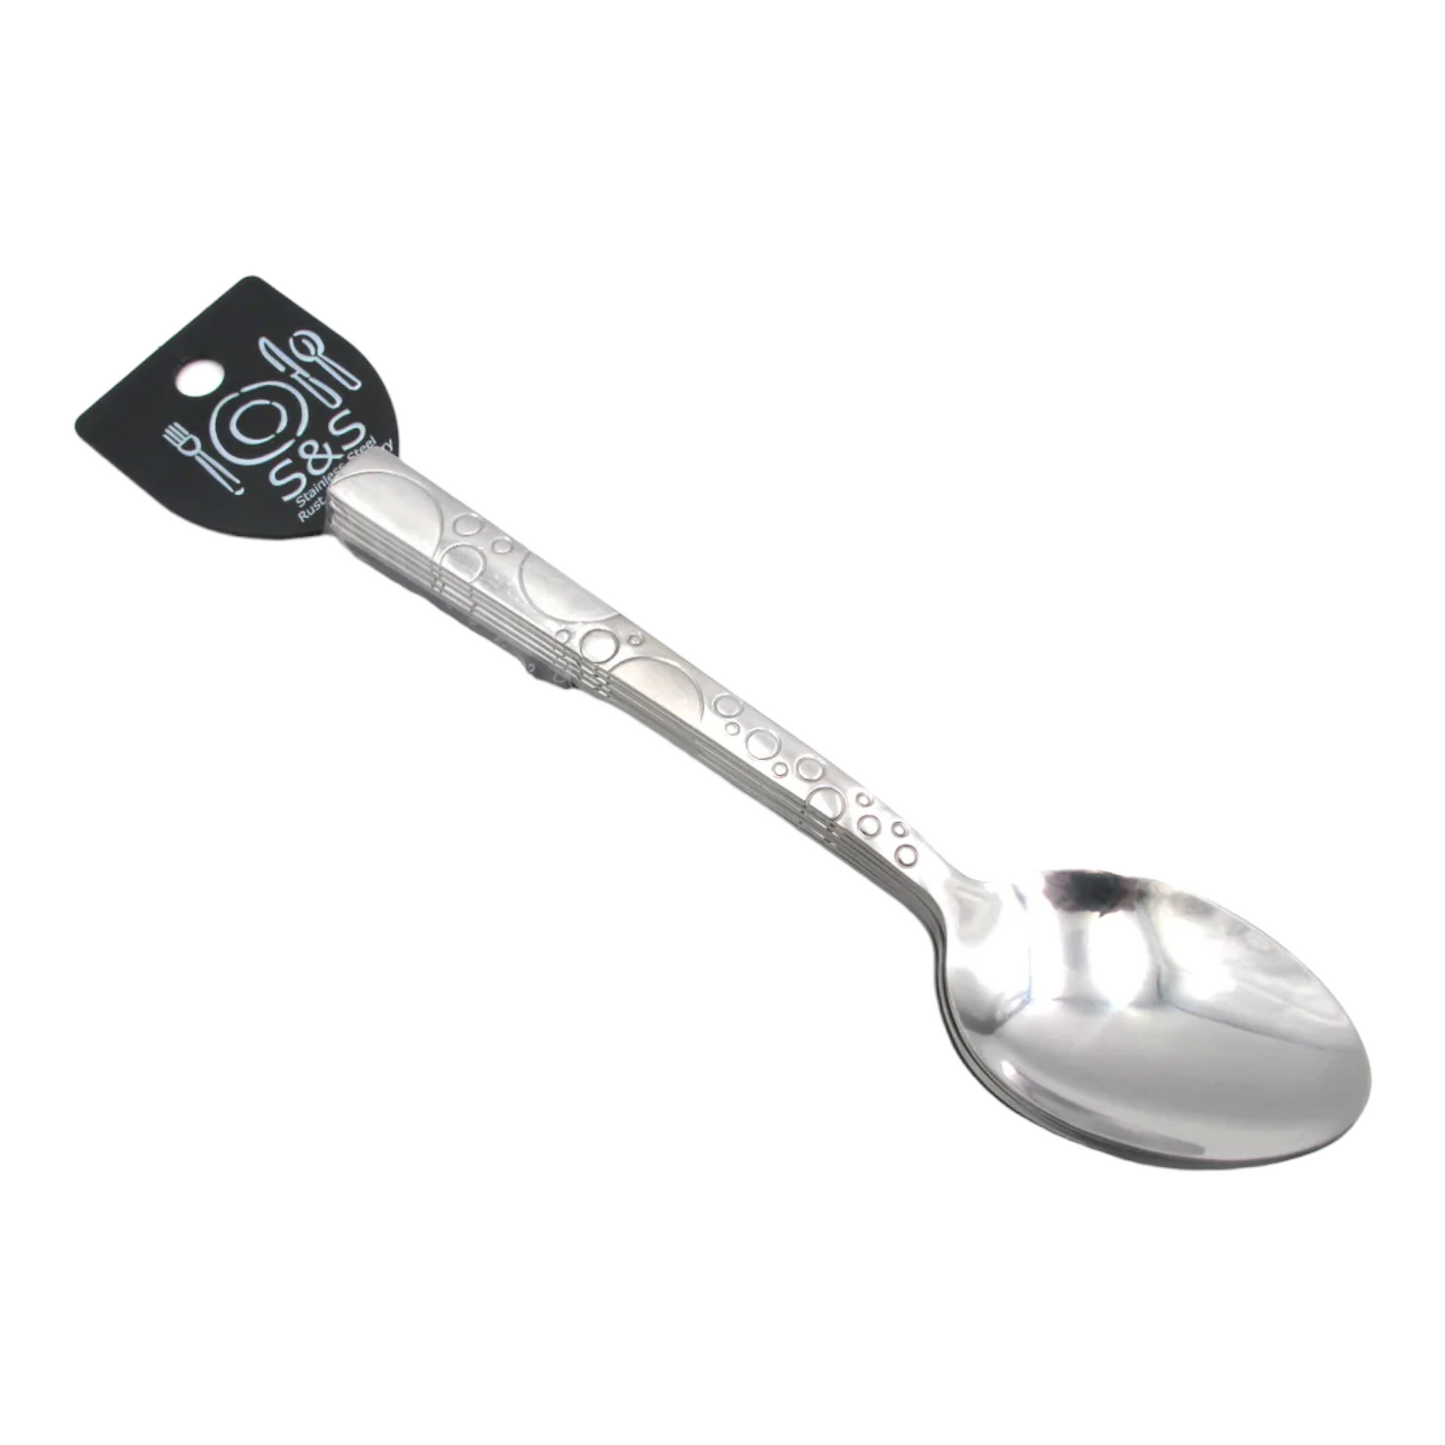 Rondelle dinner spoons X6. - Lunaz Shop